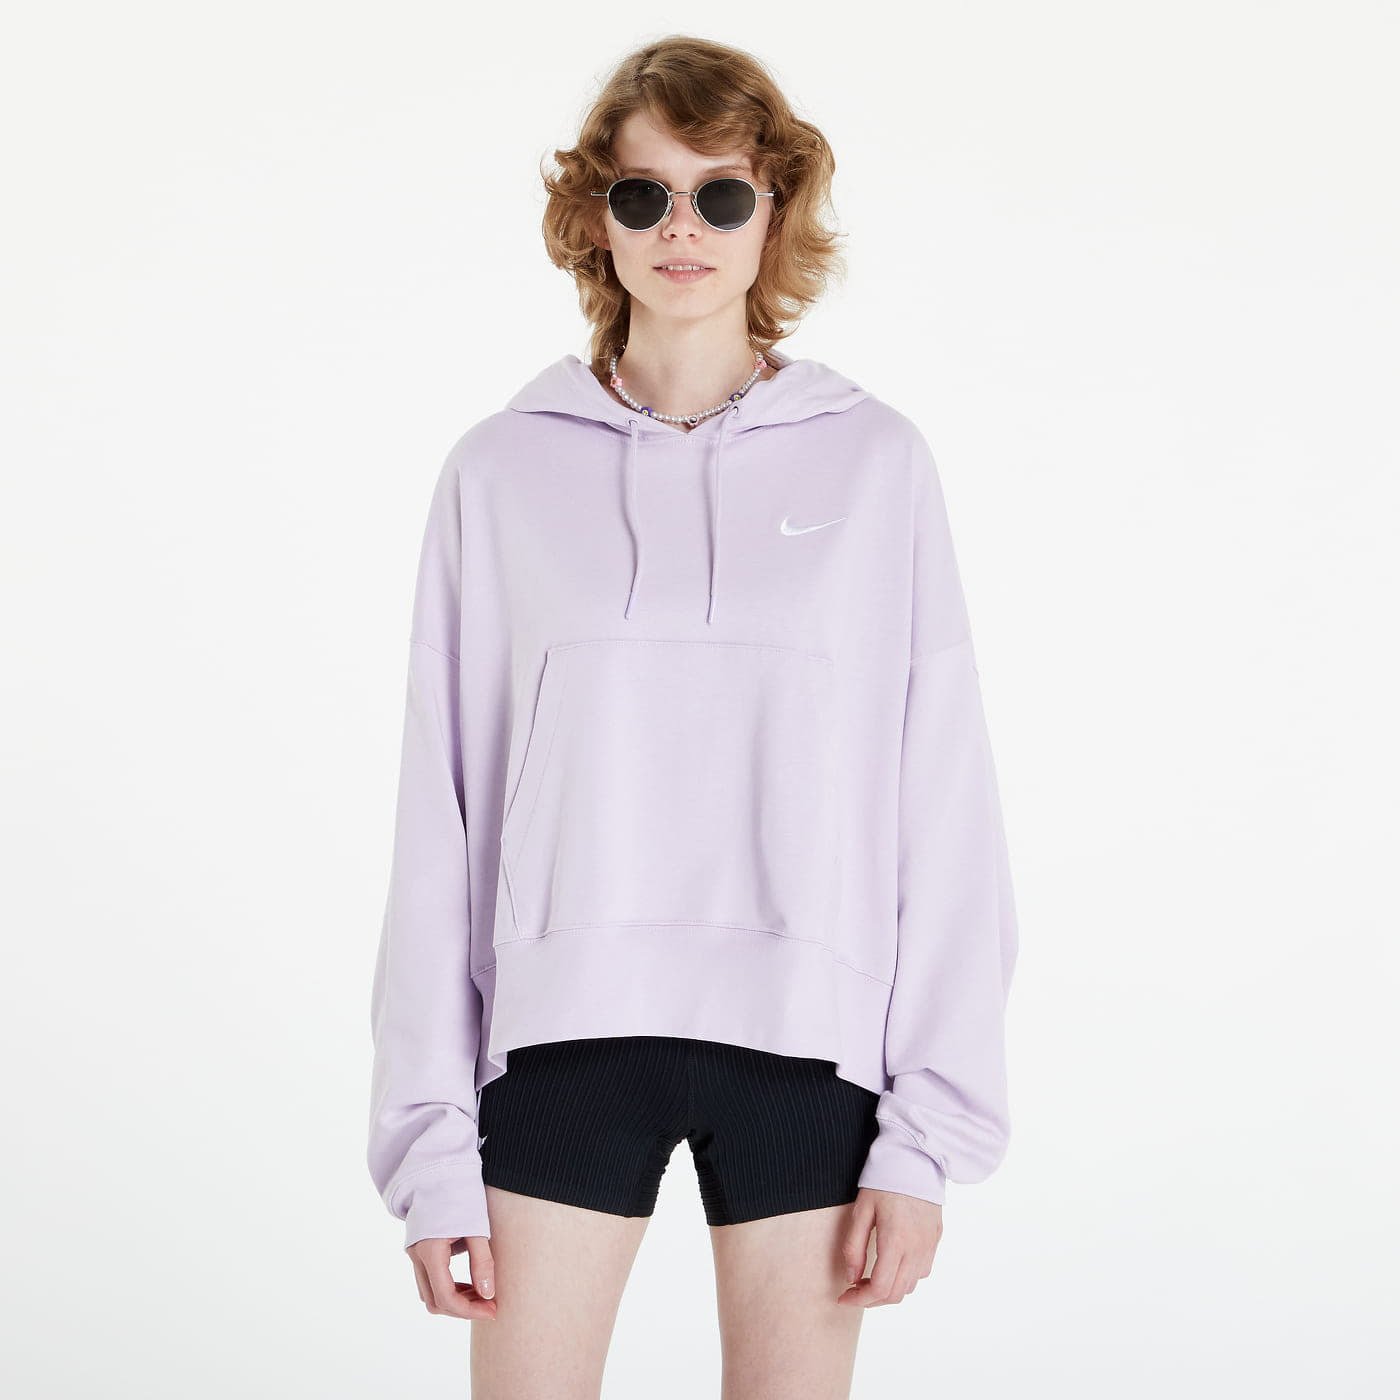 Nike - women's oversized jersey pullover hoodie light purple